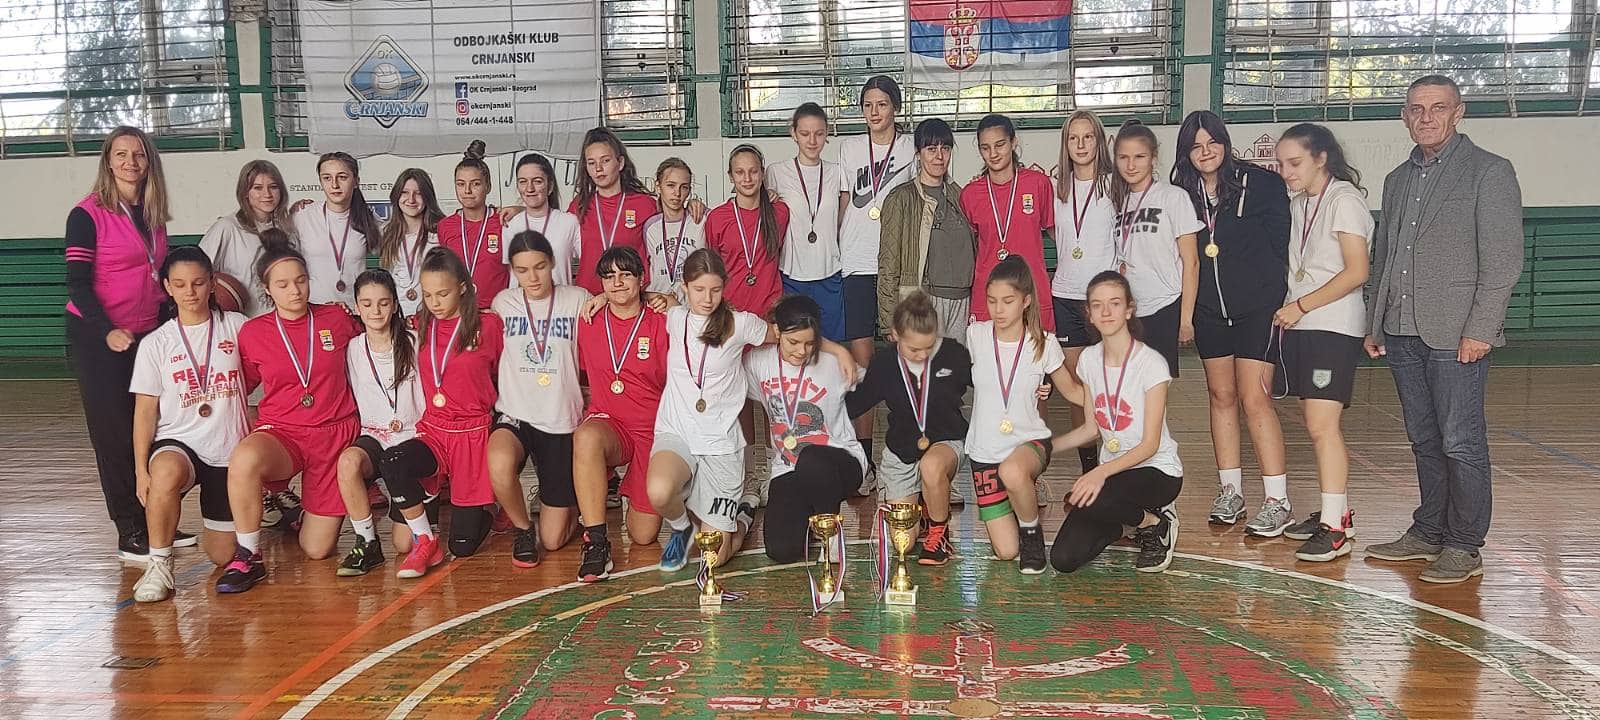 Општинско првенство у кошарци за девојчице 7. и 8. разреда